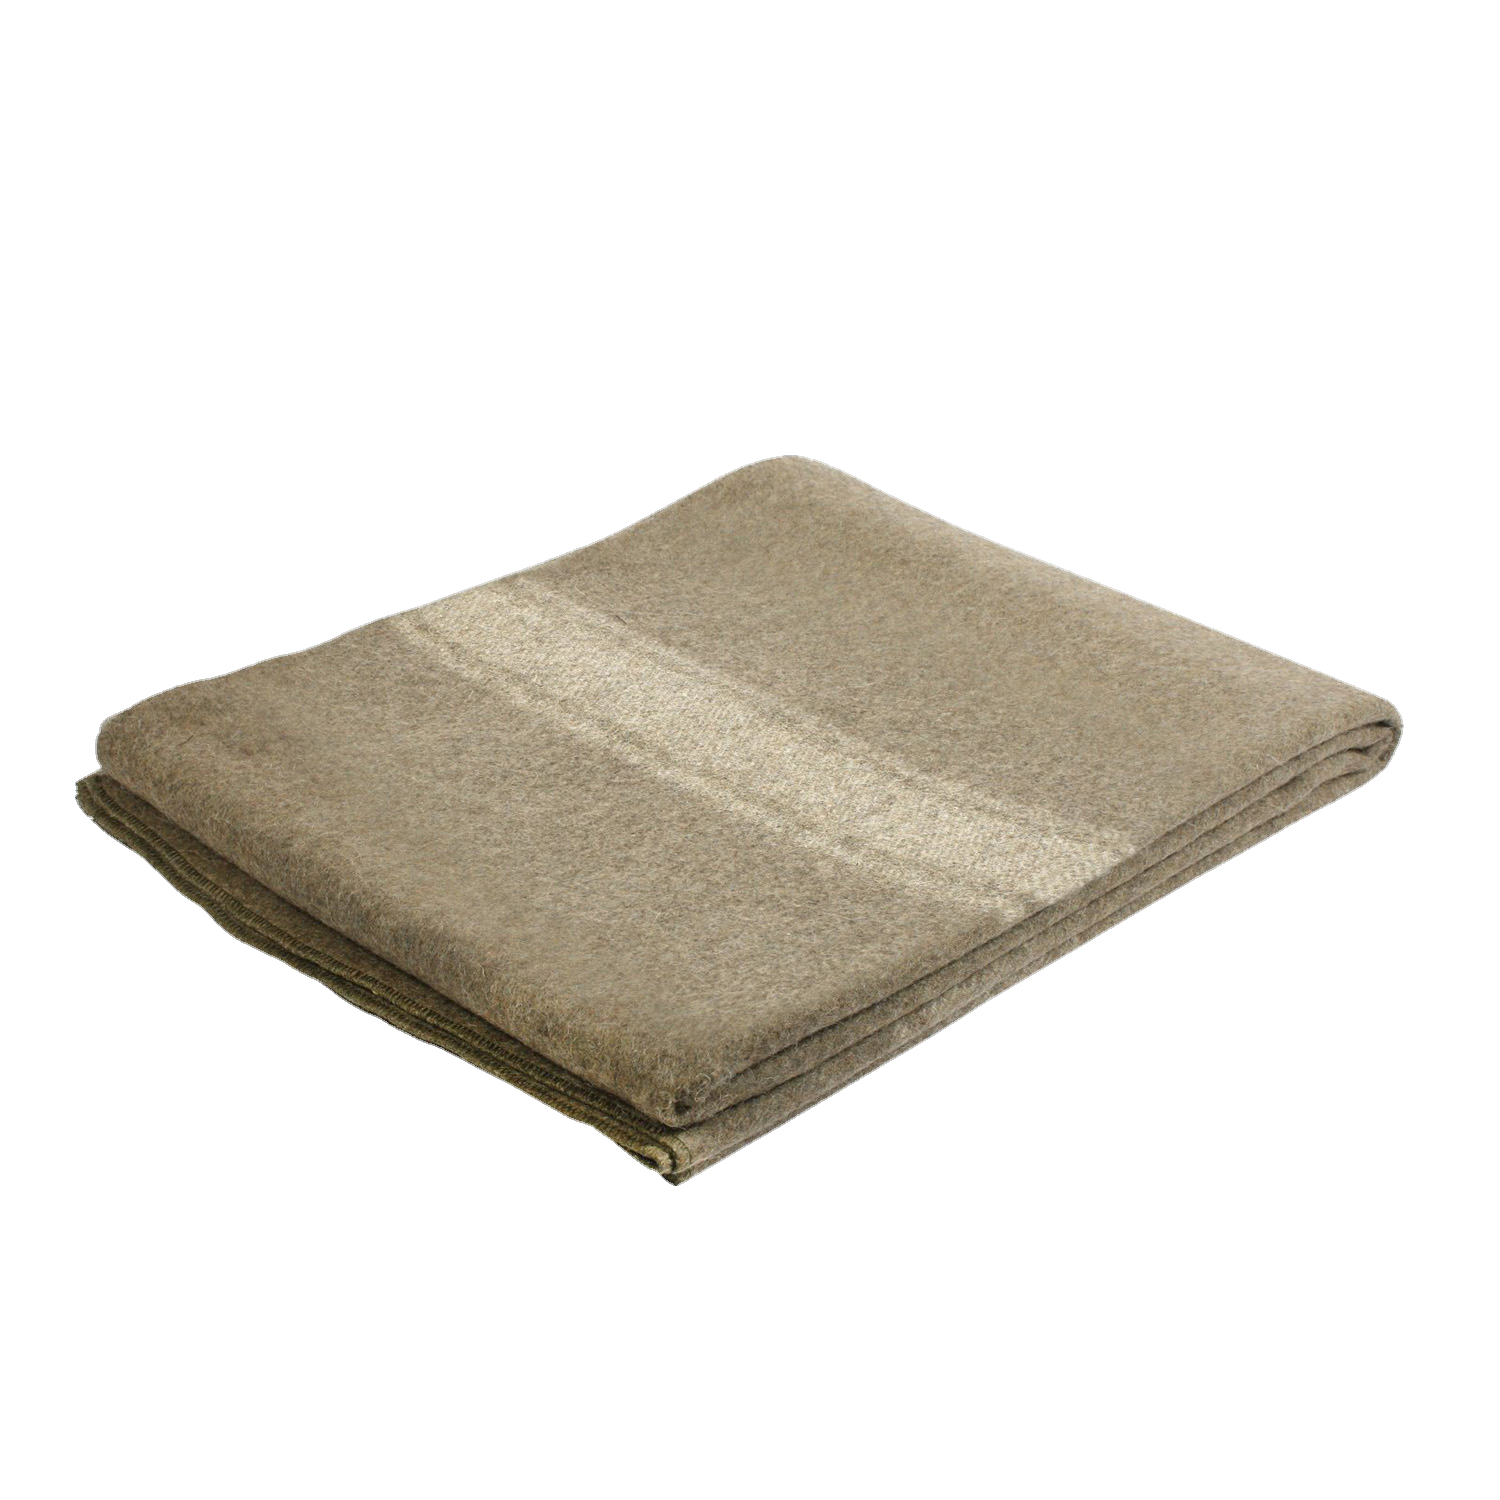 European Wool Blanket 62" x 80" (10244)